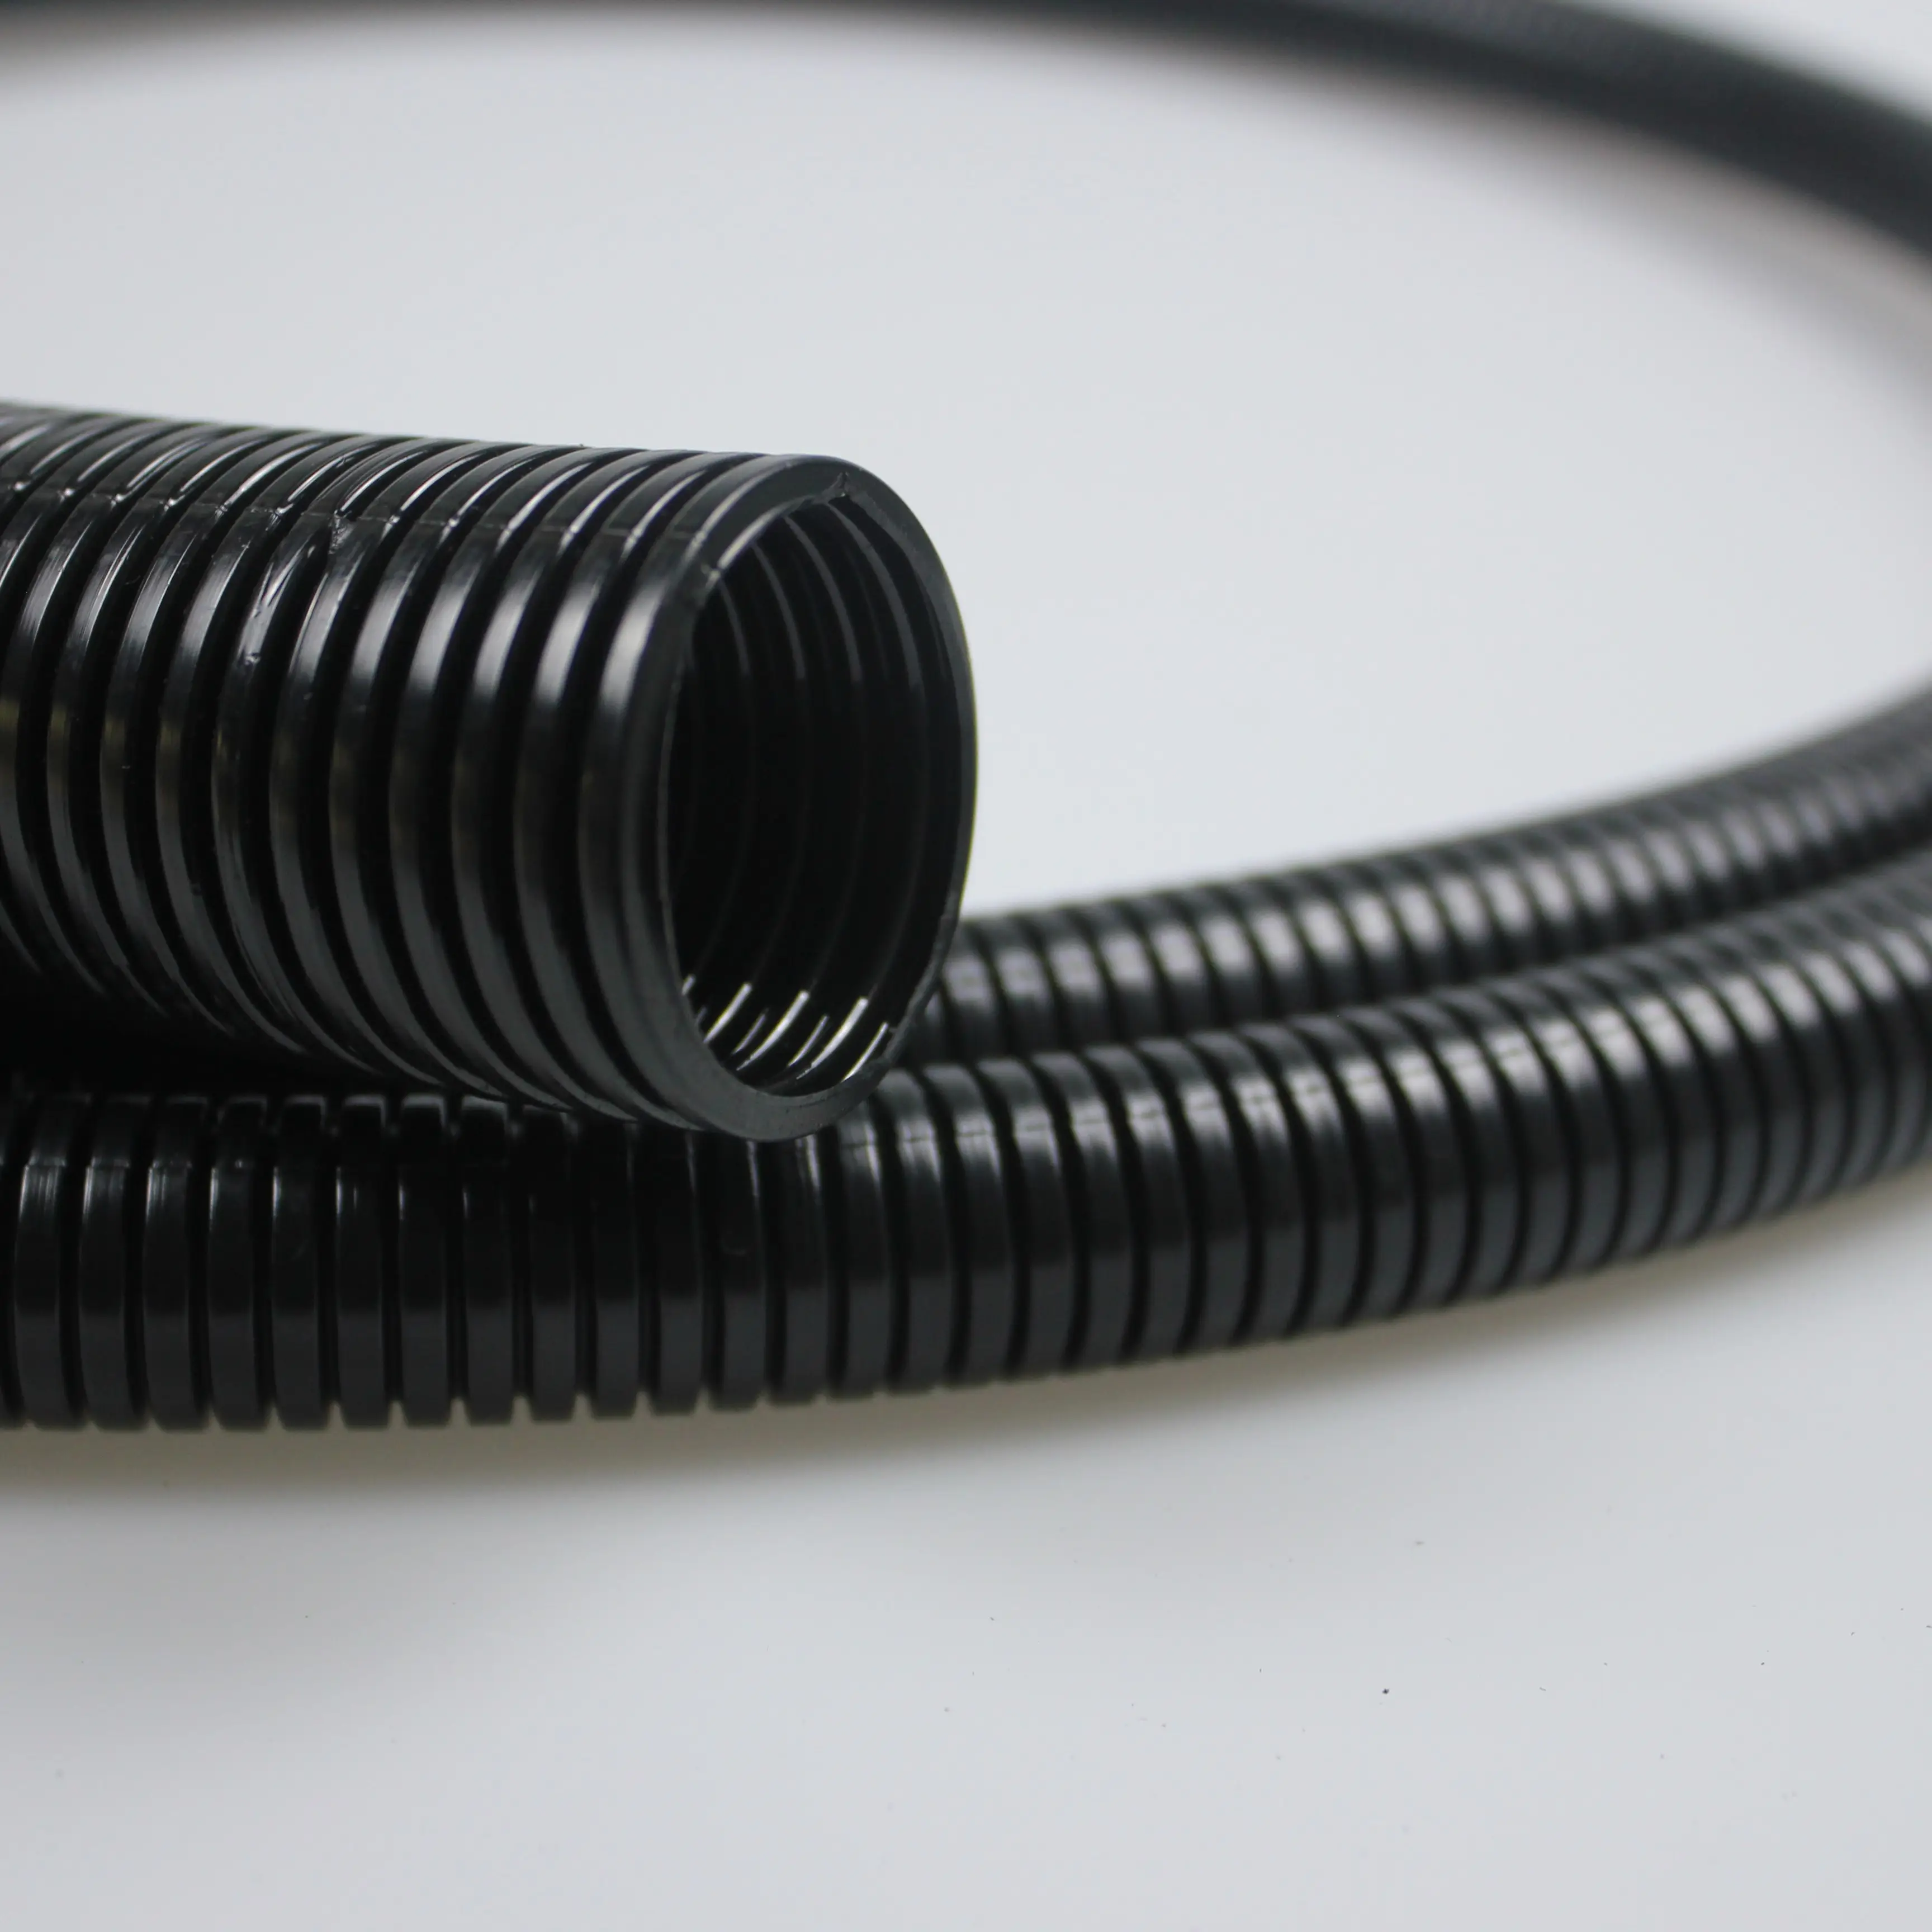 Tubo roscado de 18,5mm y 20mm, conducto grueso de plástico Pp, cable eléctrico, tubo Gi, tubos de conducto eléctrico corrugado Flexible